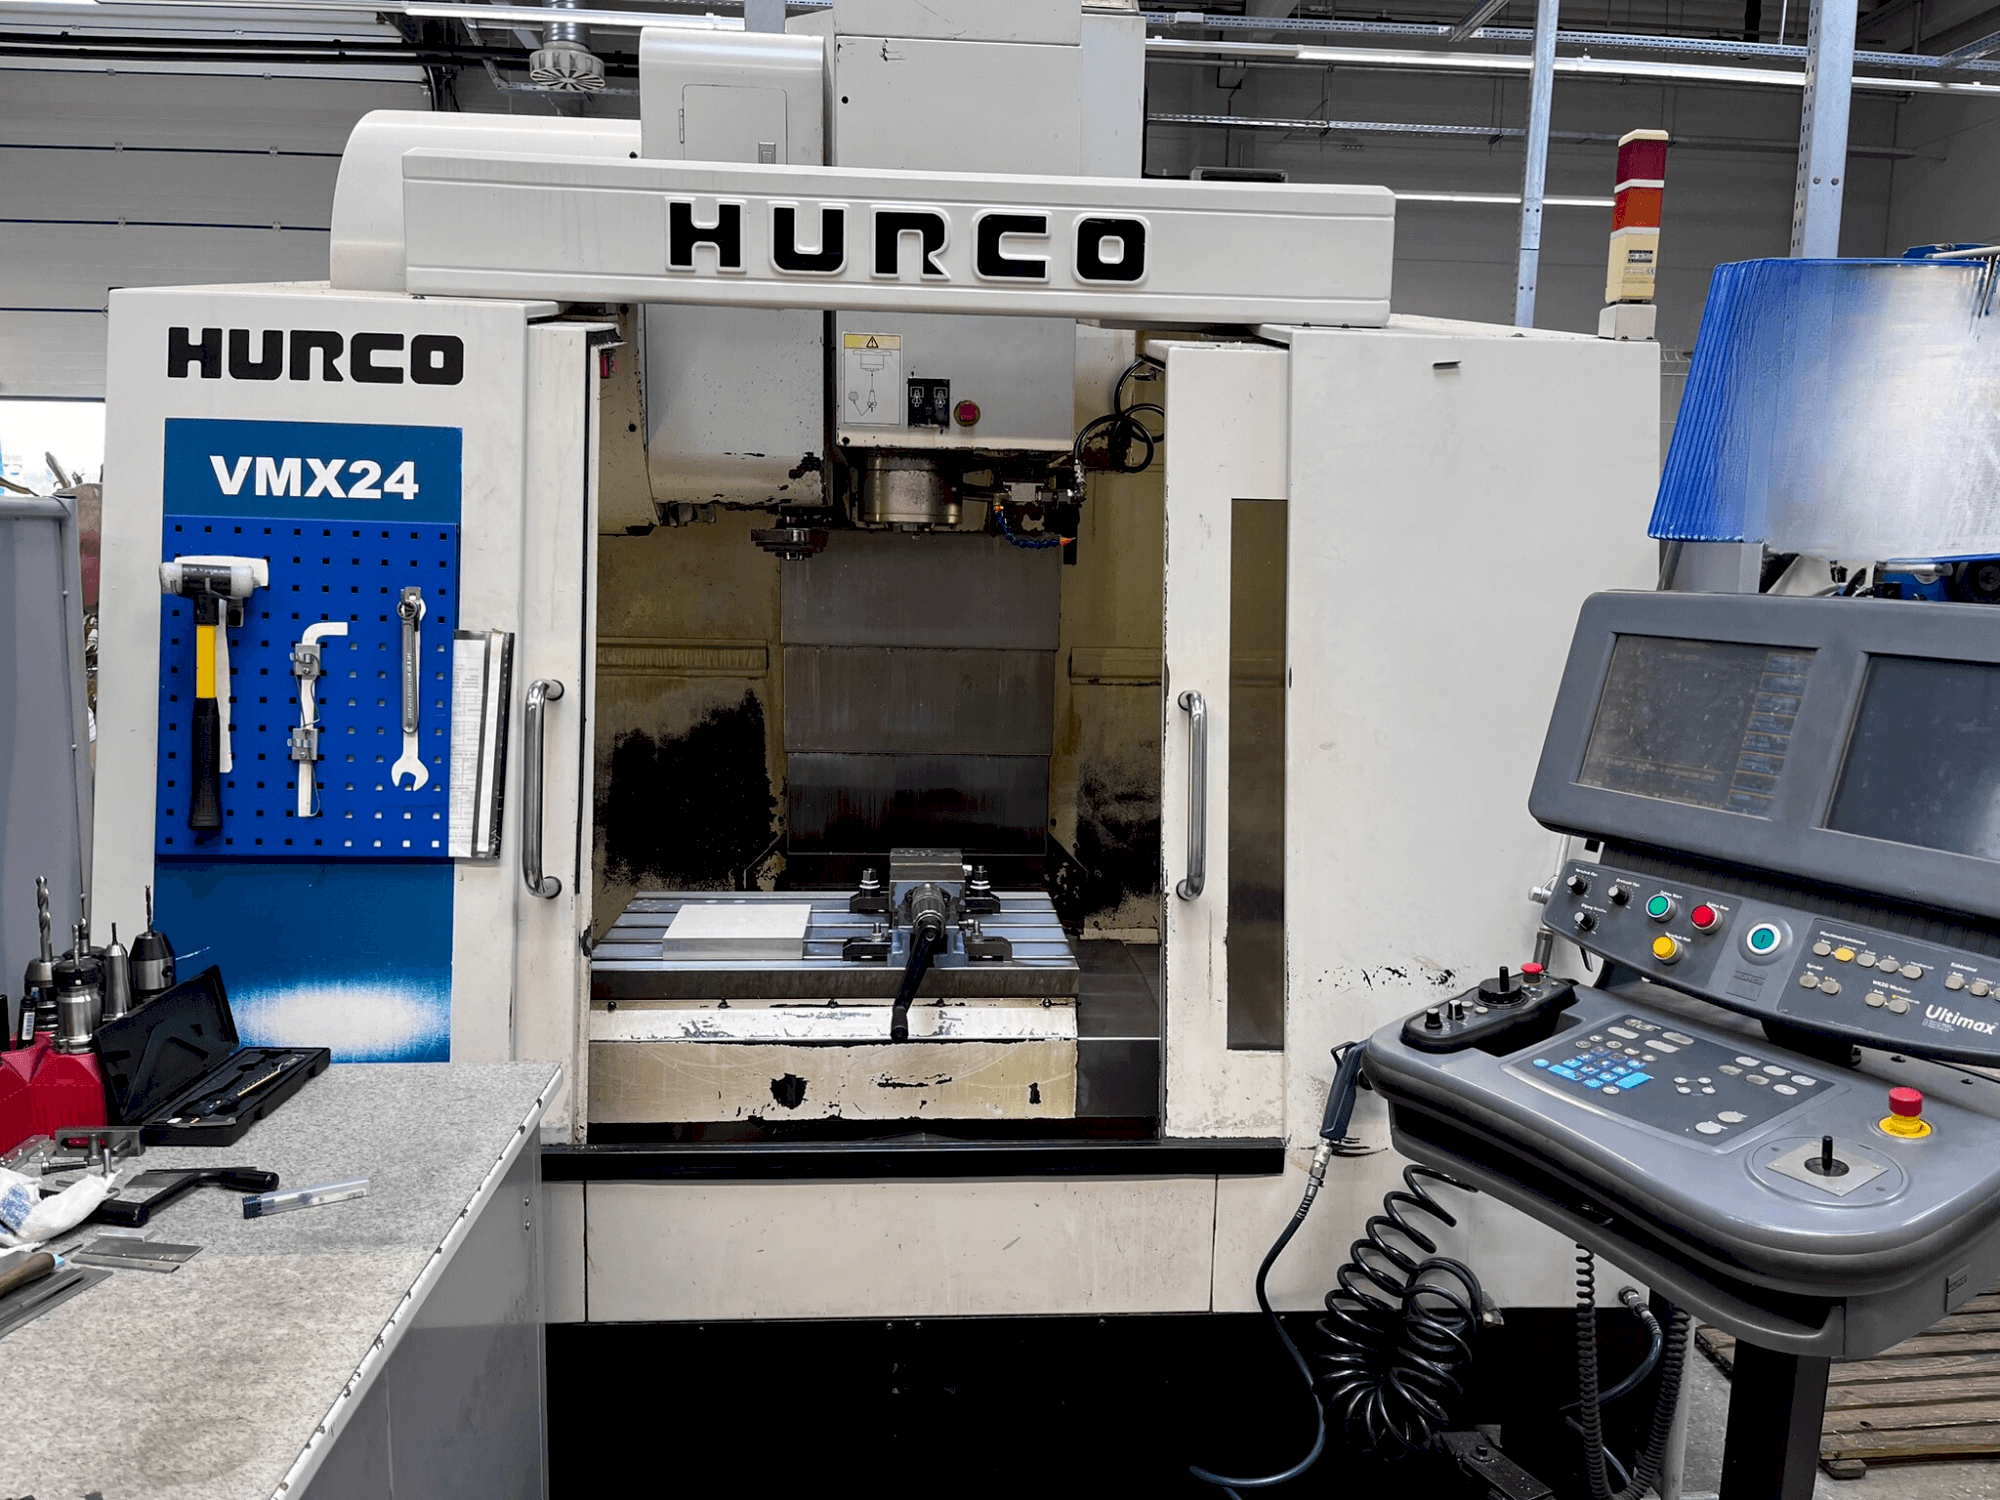 Čelní pohled  na Hurco VMX 24  stroj